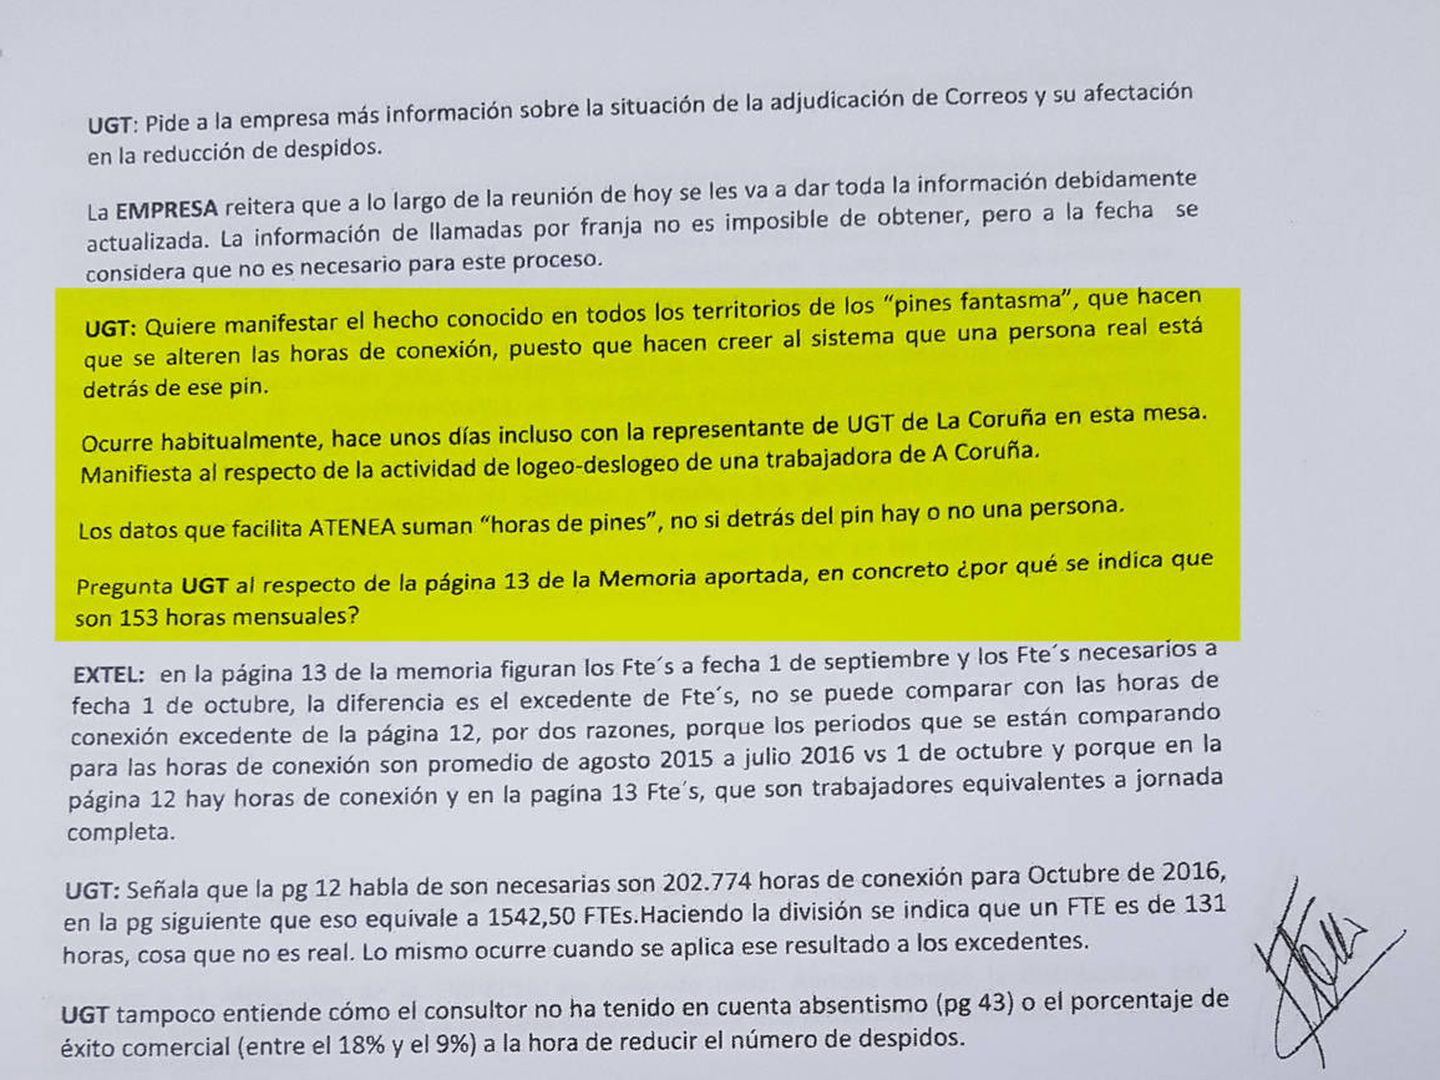 Acta de negociación de ERE entre Extel, Telefónica y los sindicatos. La transcripción atestigua que todos los actores tenían conocimiento de la situación en 2016.